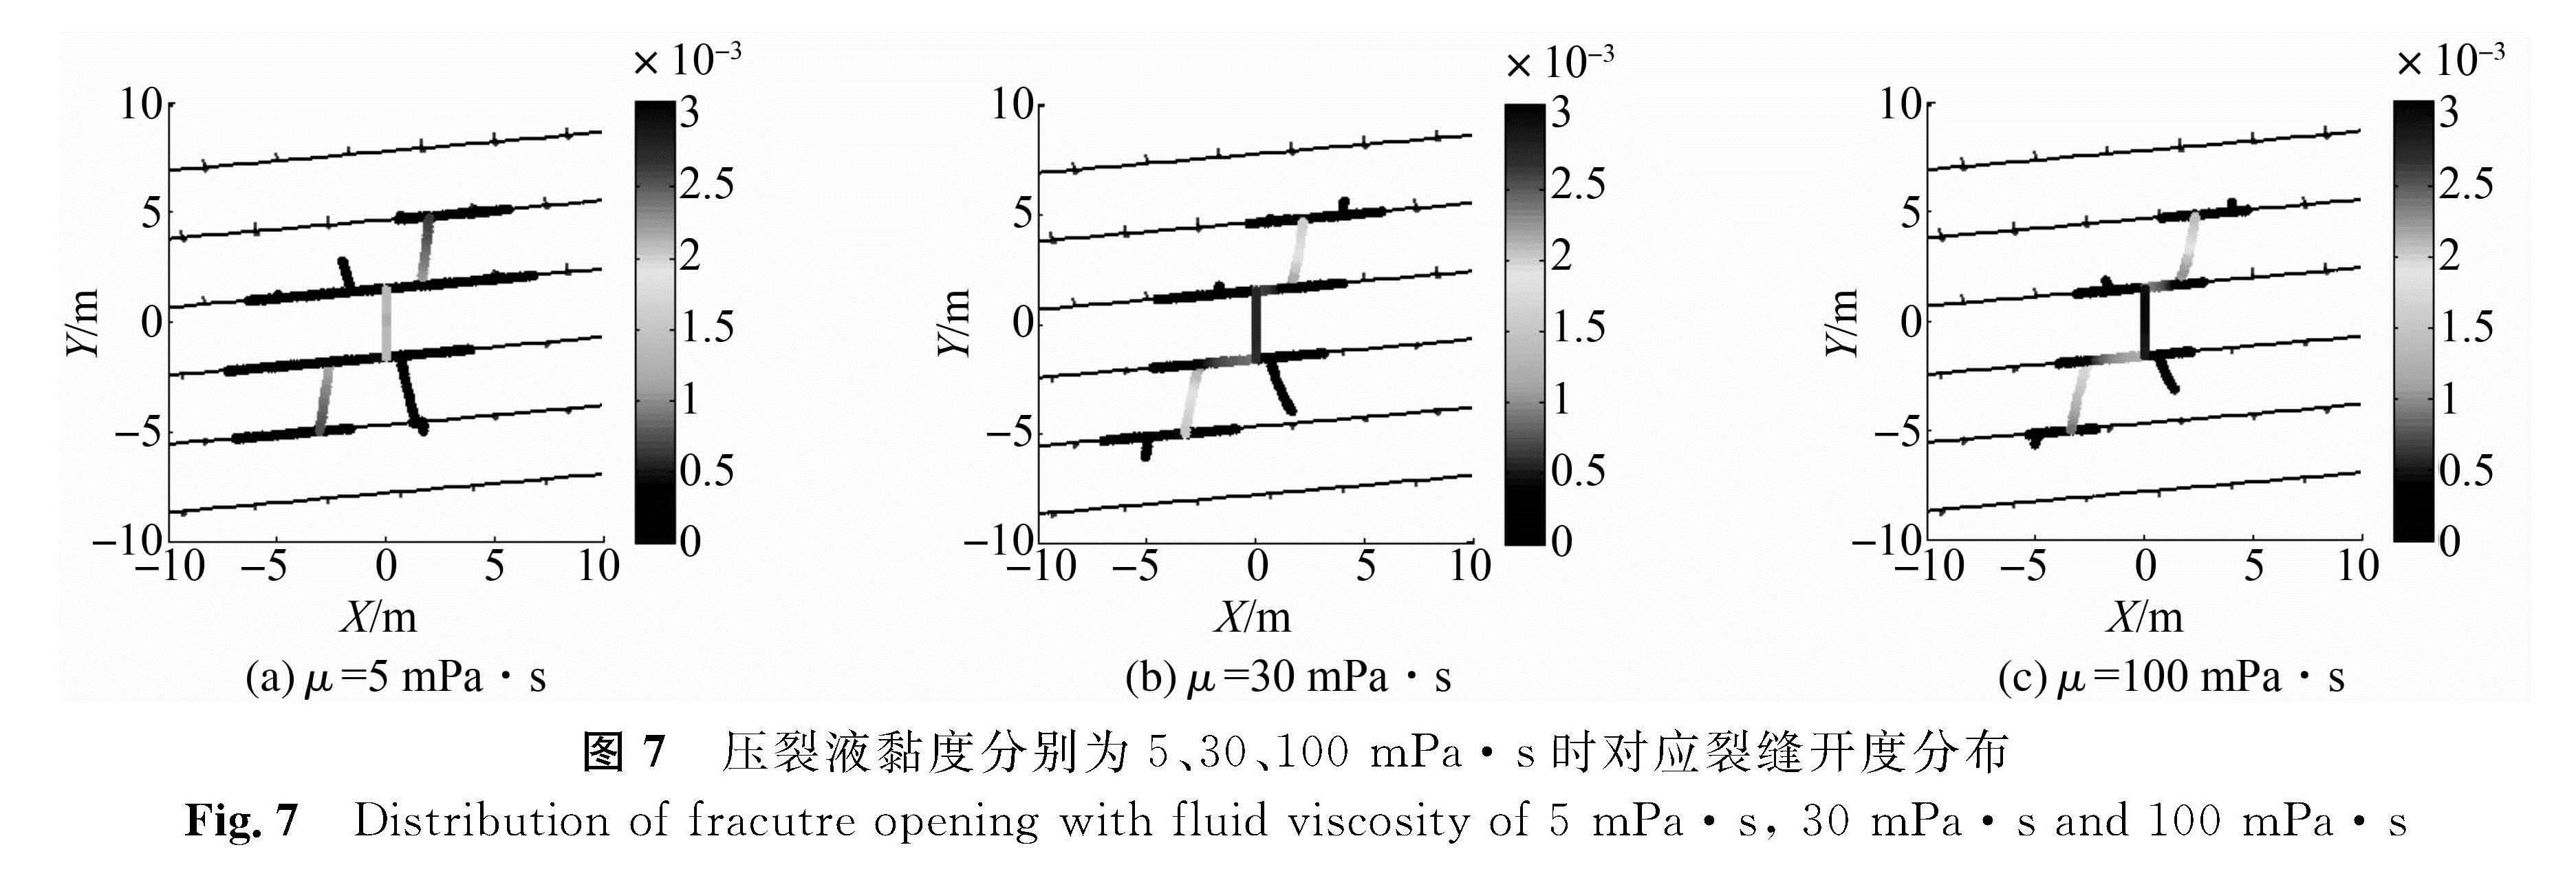 图7 压裂液黏度分别为5、30、100 mPa·s时对应裂缝开度分布<br/>Fig.7 Distribution of fracutre opening with fluid viscosity of 5 mPa·s, 30 mPa·s and 100 mPa·s